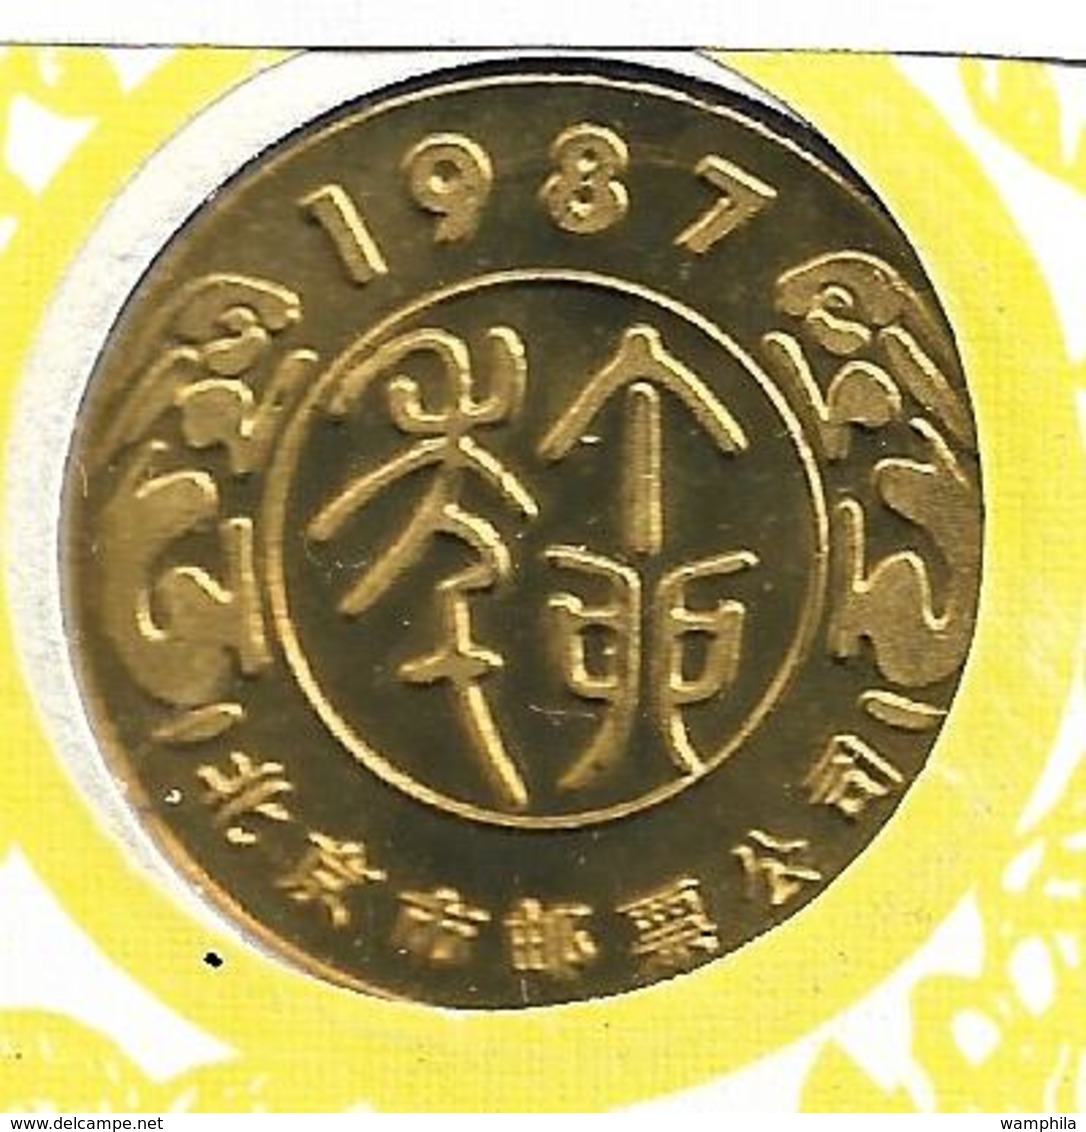 Chine un lot de 122 enveloppes 1°jour (FDC)  de 1982 à 1999.